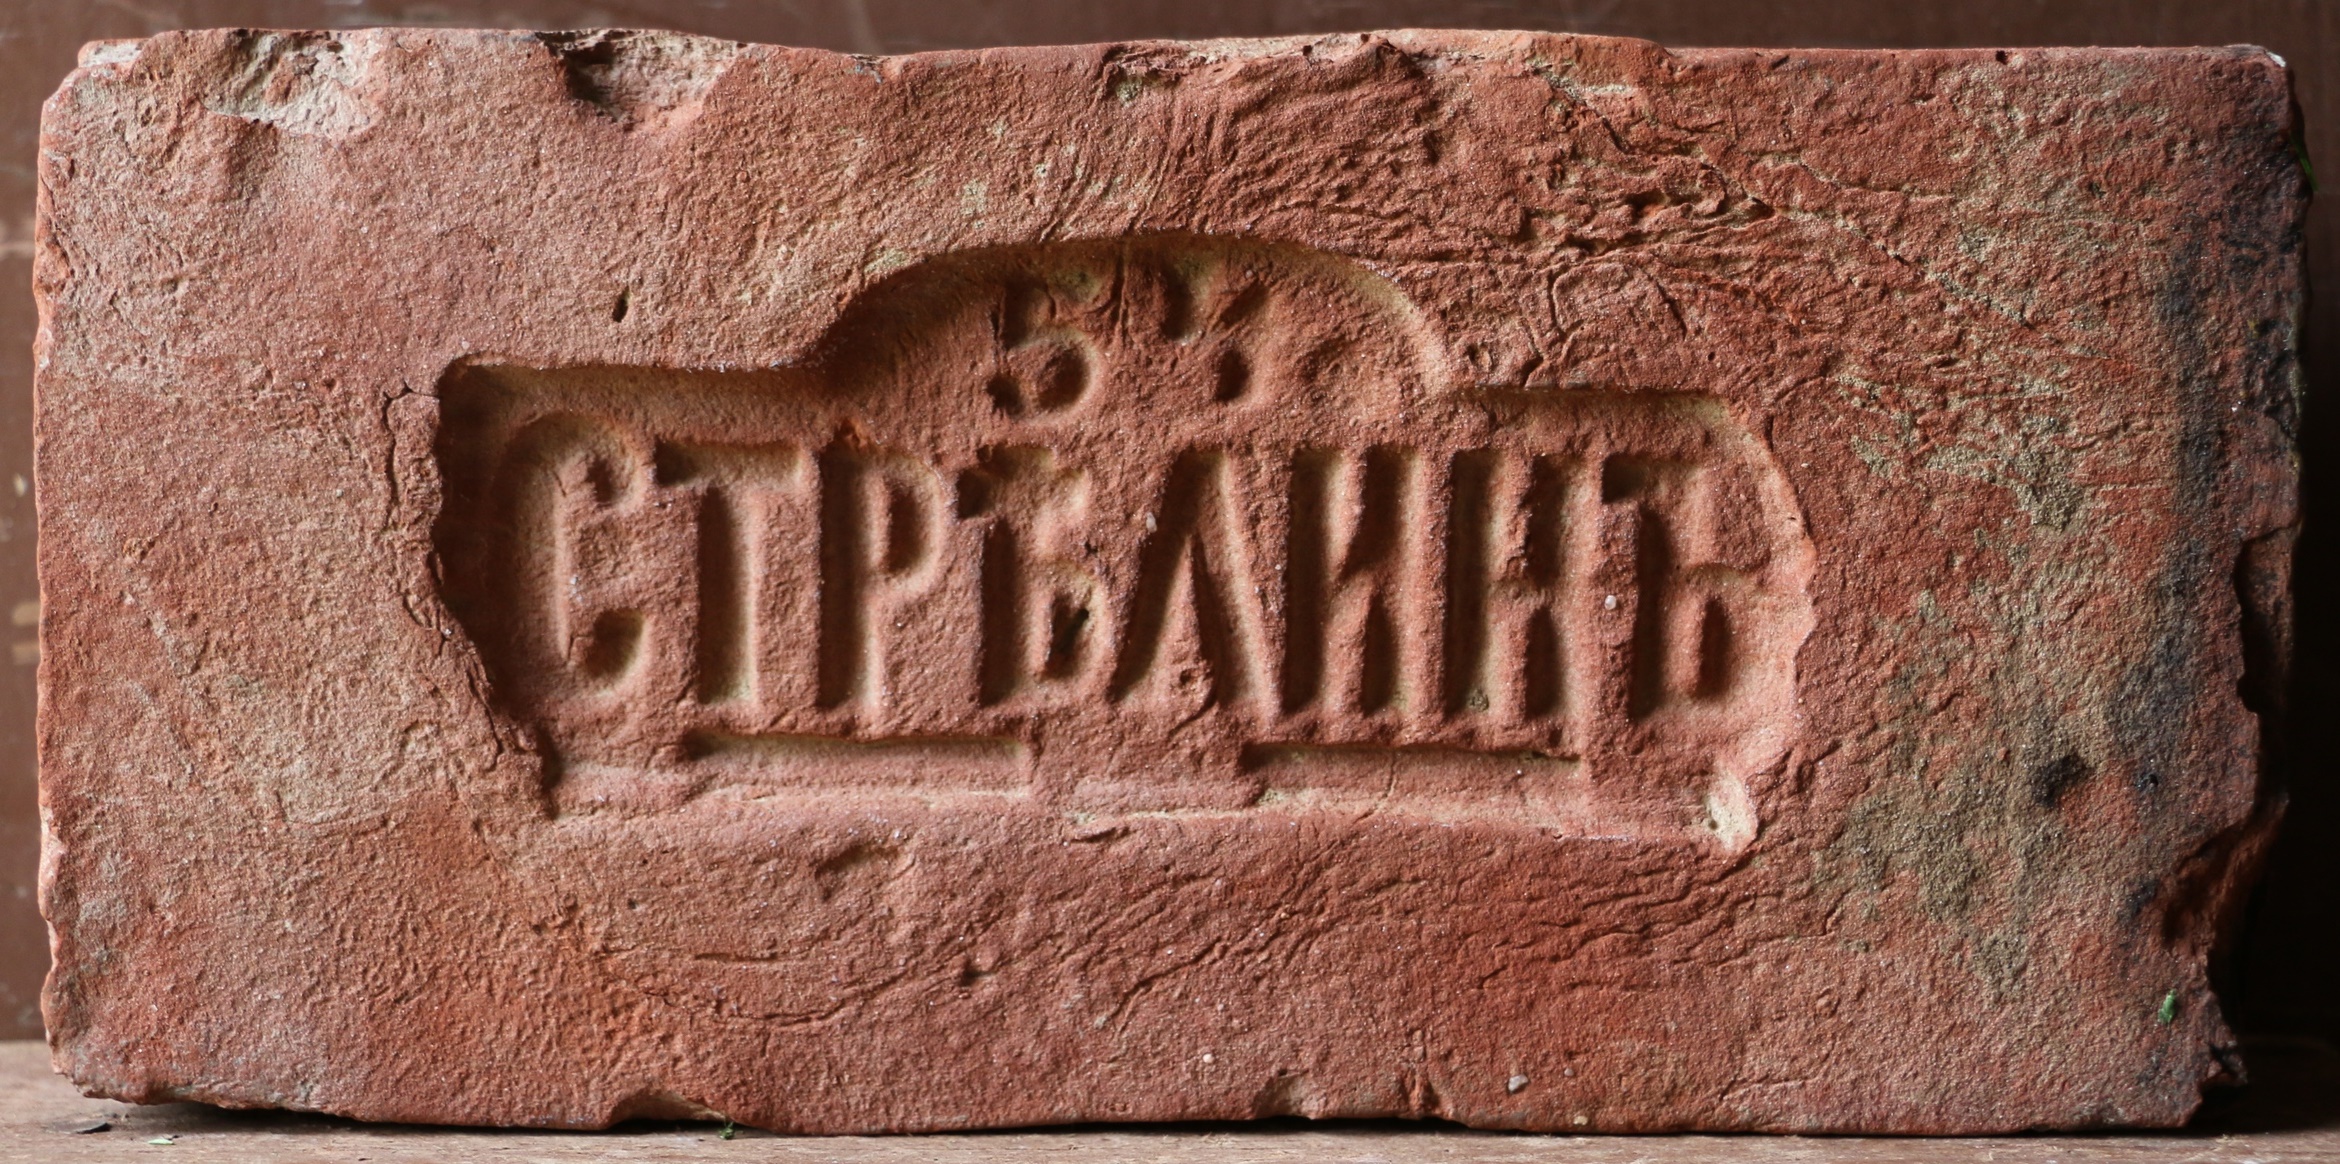 Кирпич с клеймом Стрелинъ 54 (колотая матрица). Фото Михаила Попова